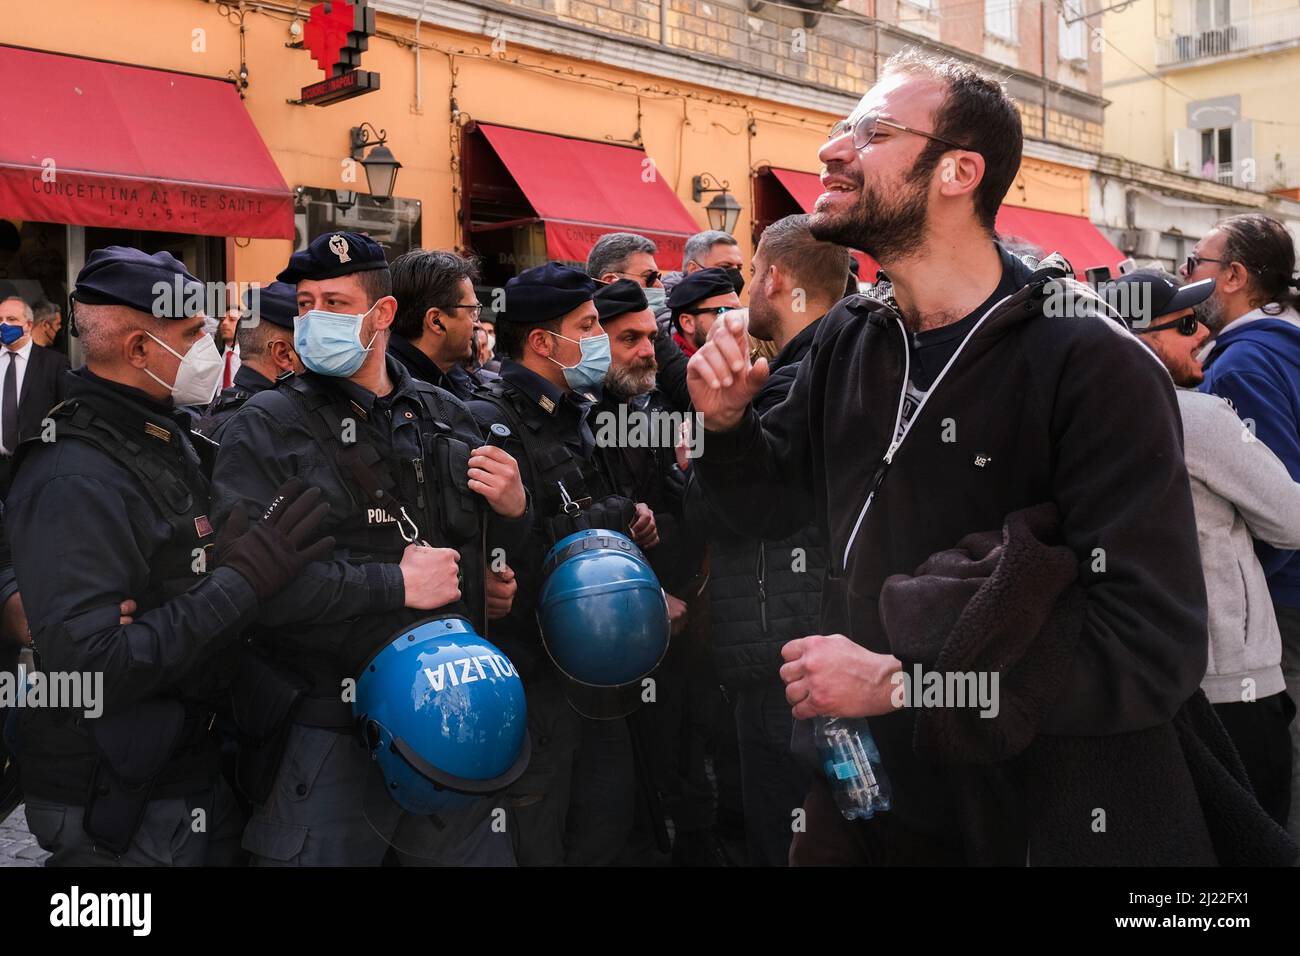 Mario Draghi à l'extérieur d'une pizzeria napolitaine historique est protesté par les manifestants, le jour de la signature du pacte pour Naples, un accord entre le gouvernement et la ville de Naples en vertu duquel l'État paiera environ Û1.3 milliards dans les coffres de la ville sur 20 ans. Banque D'Images